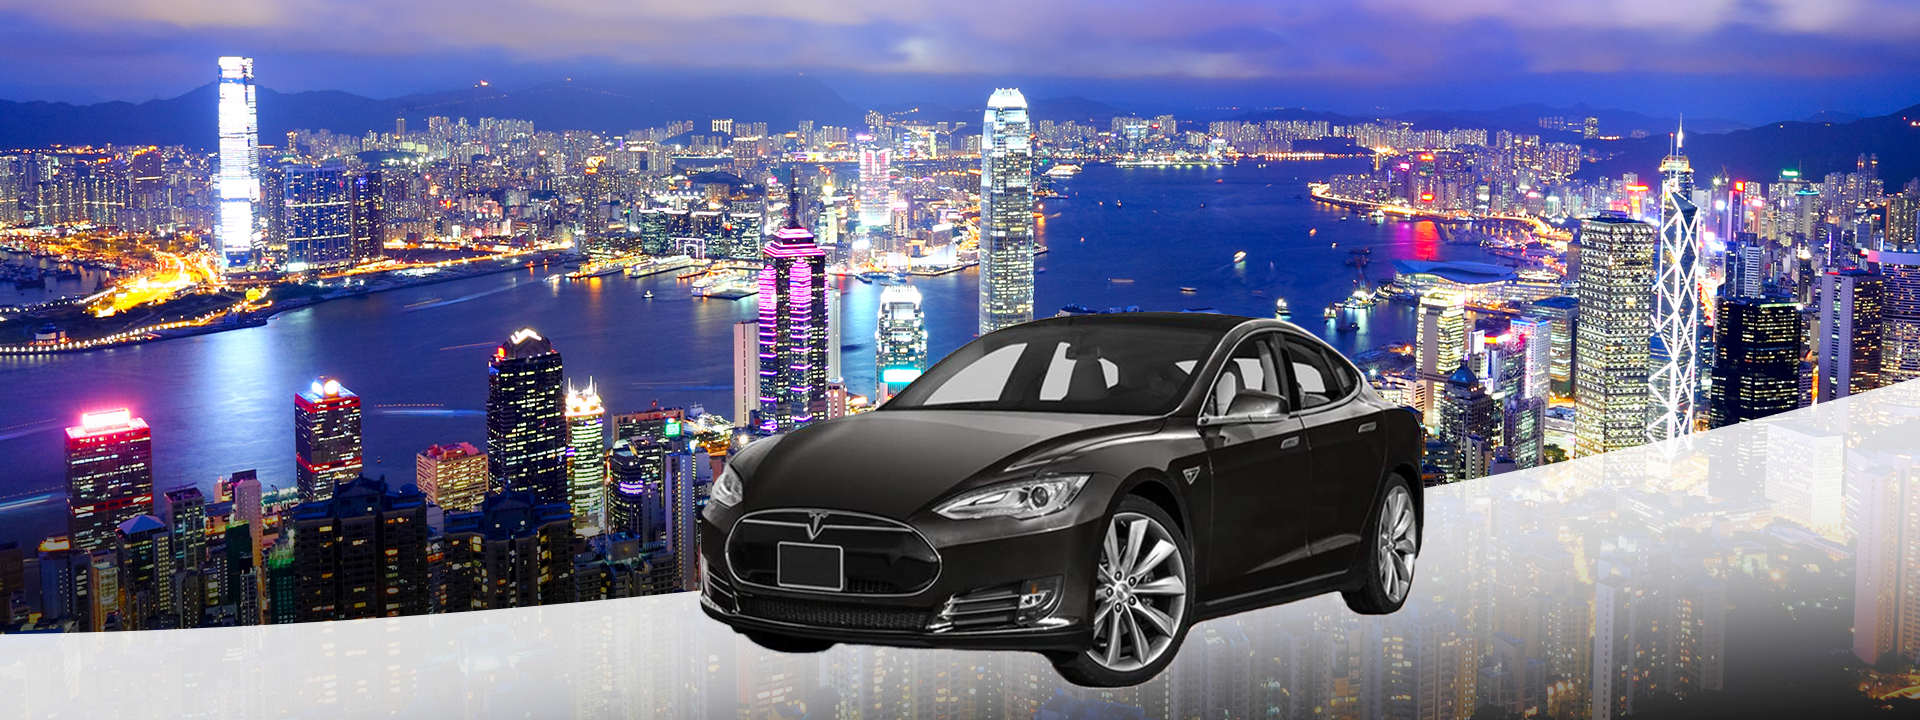 【暢遊香港】Tesla轎車包車遊覽